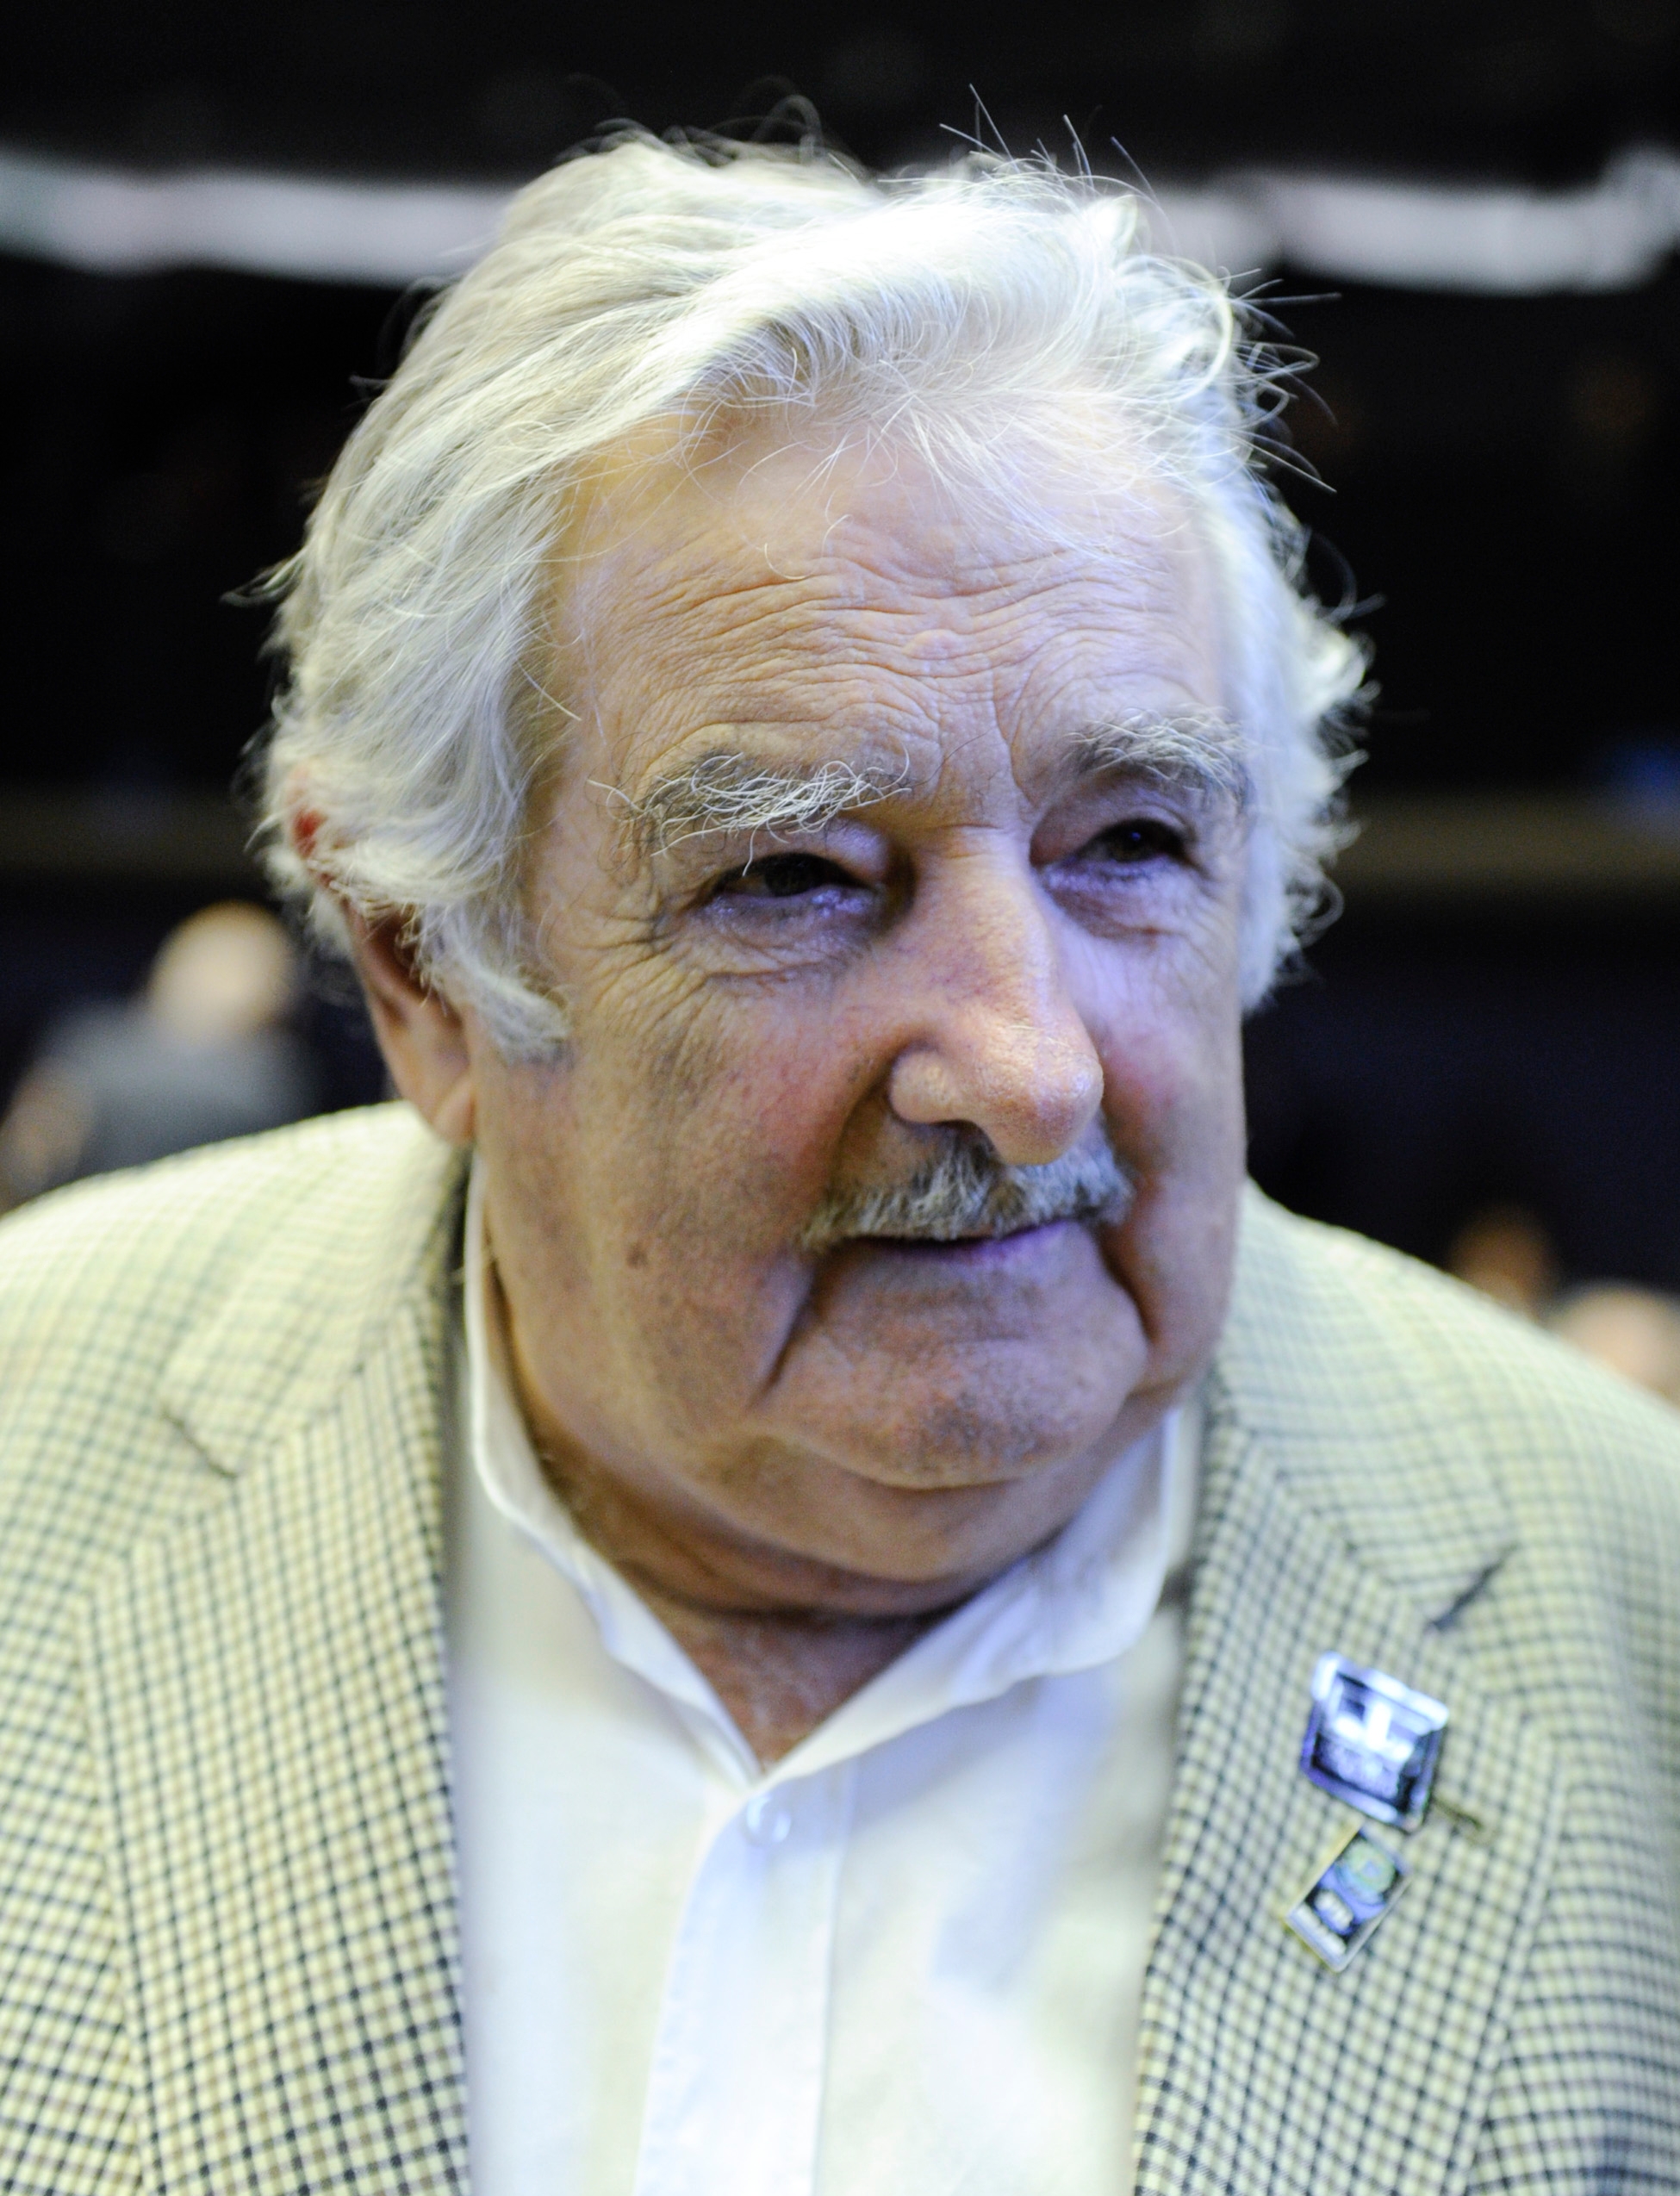 auteur Jose Mujica de la citation Nous avons sacrifié les anciens dieux immatériels, et maintenant nous occupons le temple de la dieu du marché. Il organise notre économie, notre politique, nos habitudes, nos vies et nous offre même des tarifs et des cartes de crédit et nous donne l'apparence du bonheur.